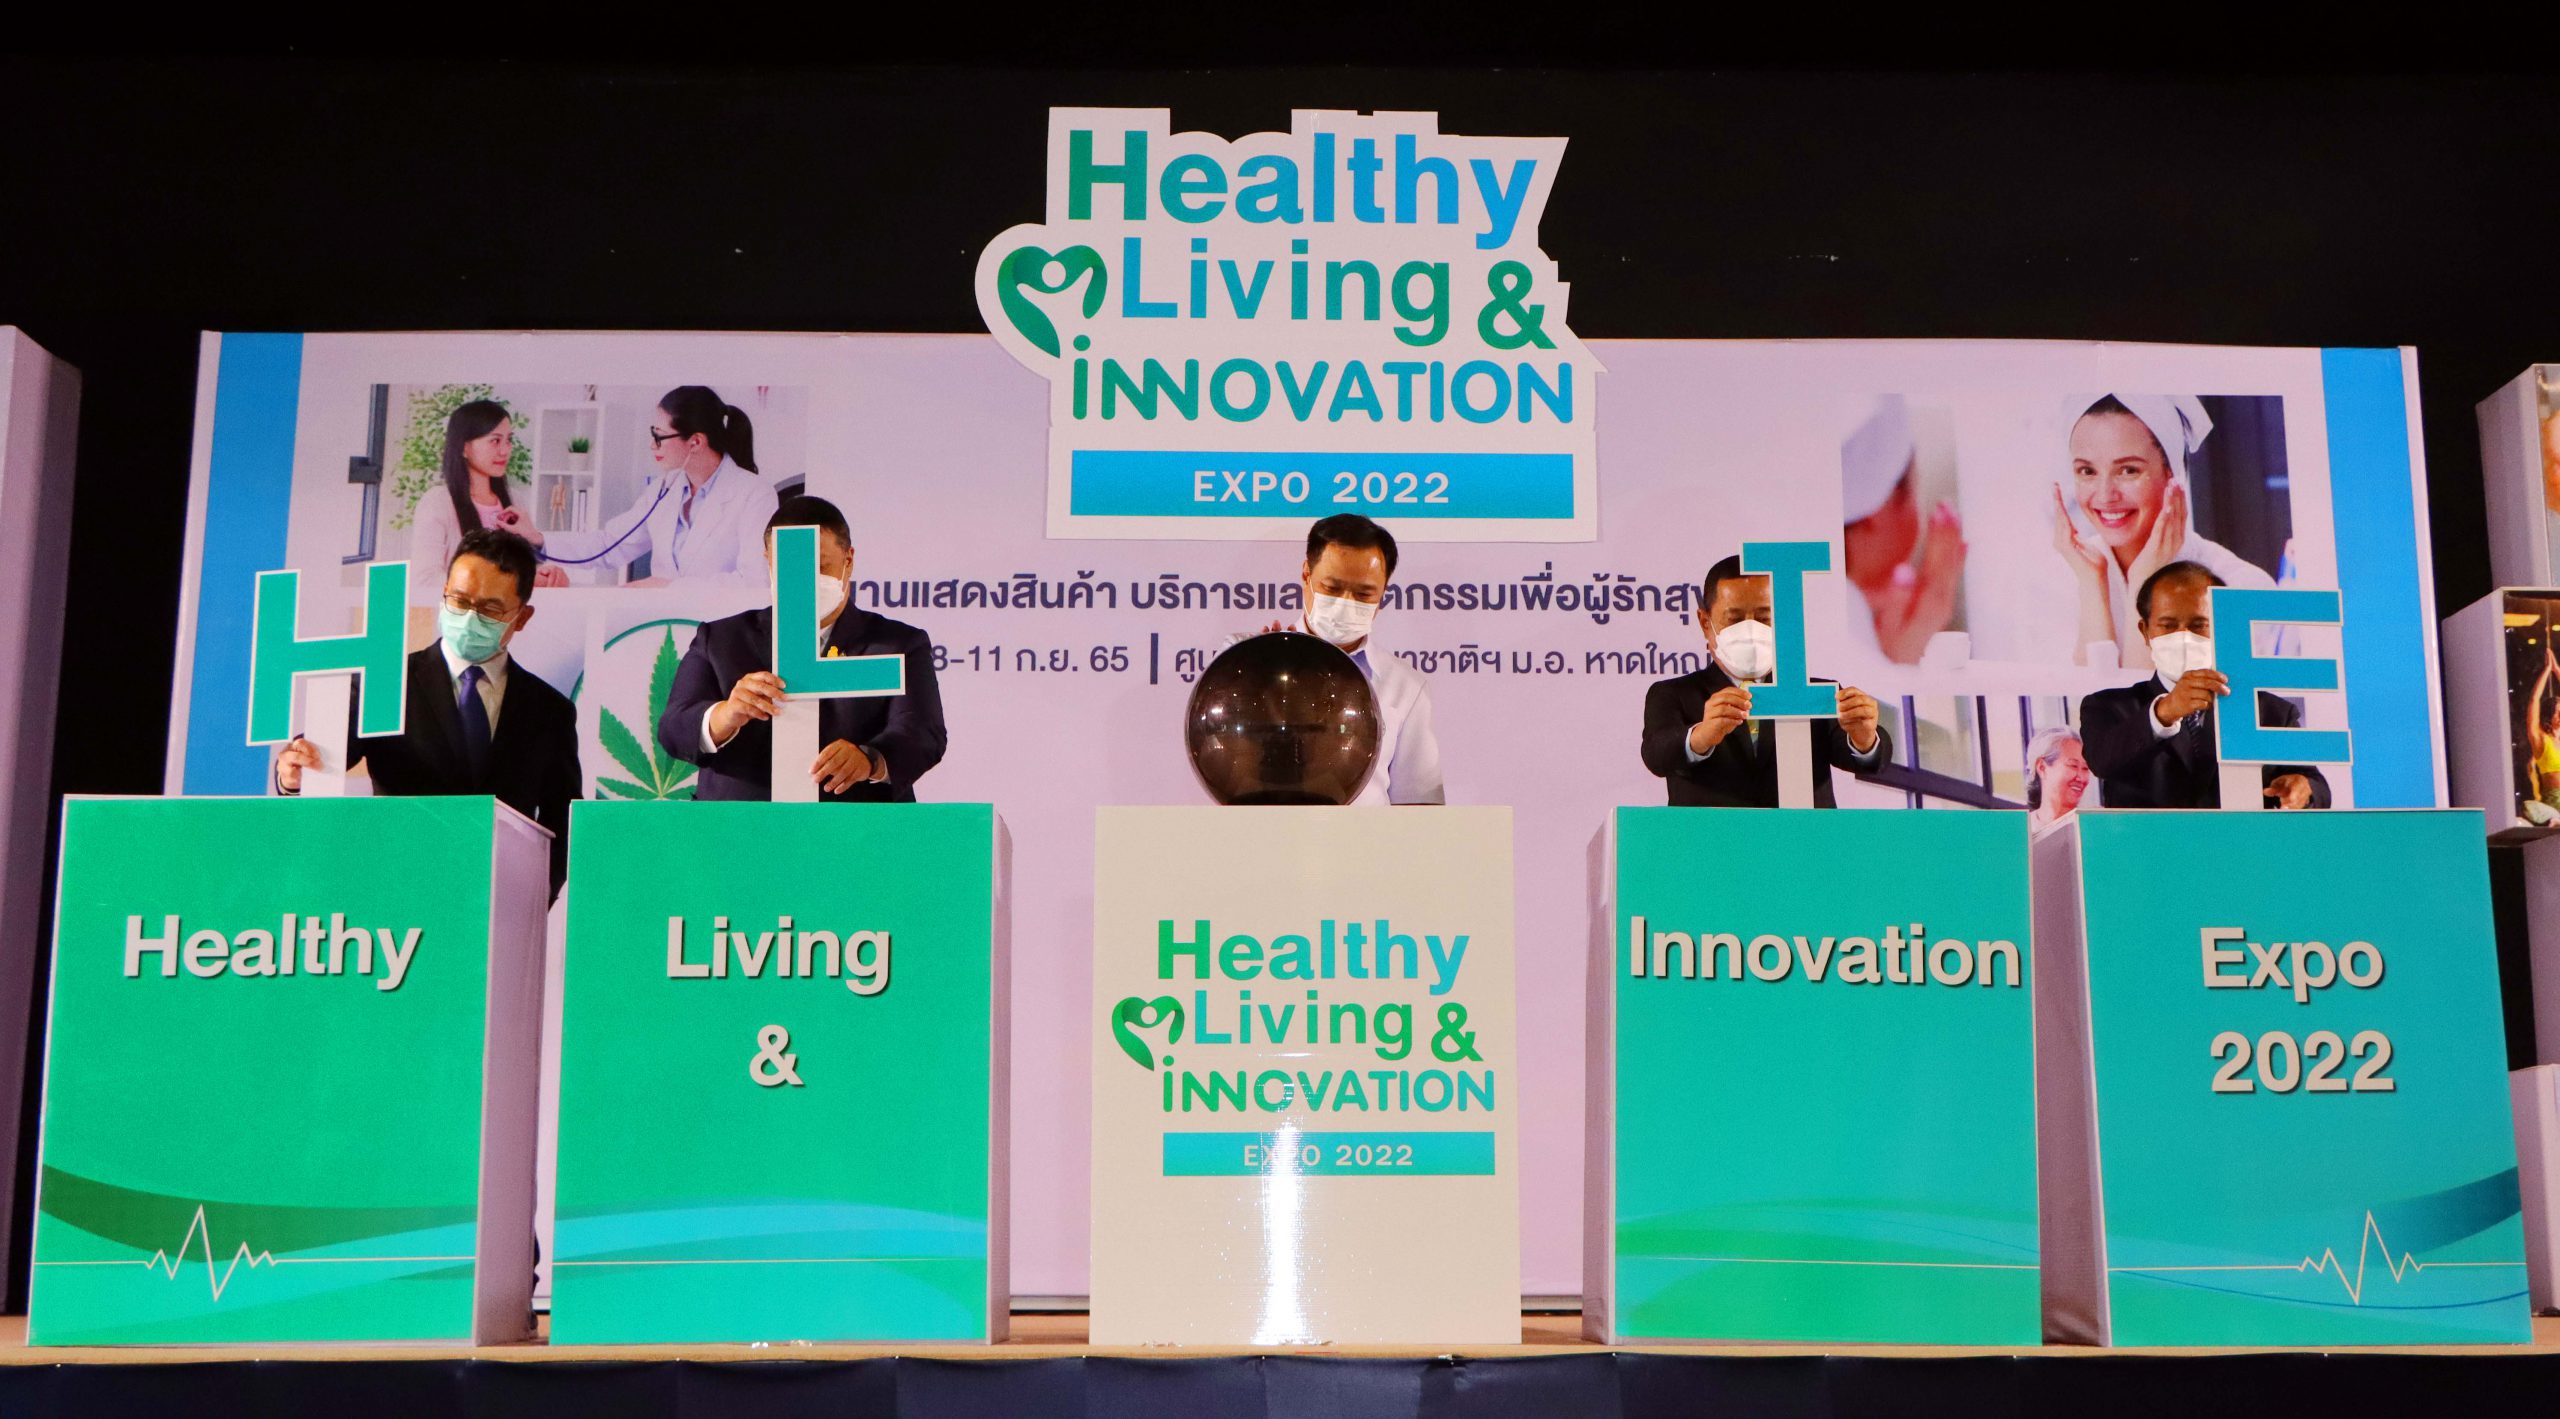 เริ่มแล้ว Healthy Living & Innovation Expo 2022 งานแสดงสินค้าบริการ งานวิจัยและนวัตกรรม เพื่อผู้รักสุขภาพ